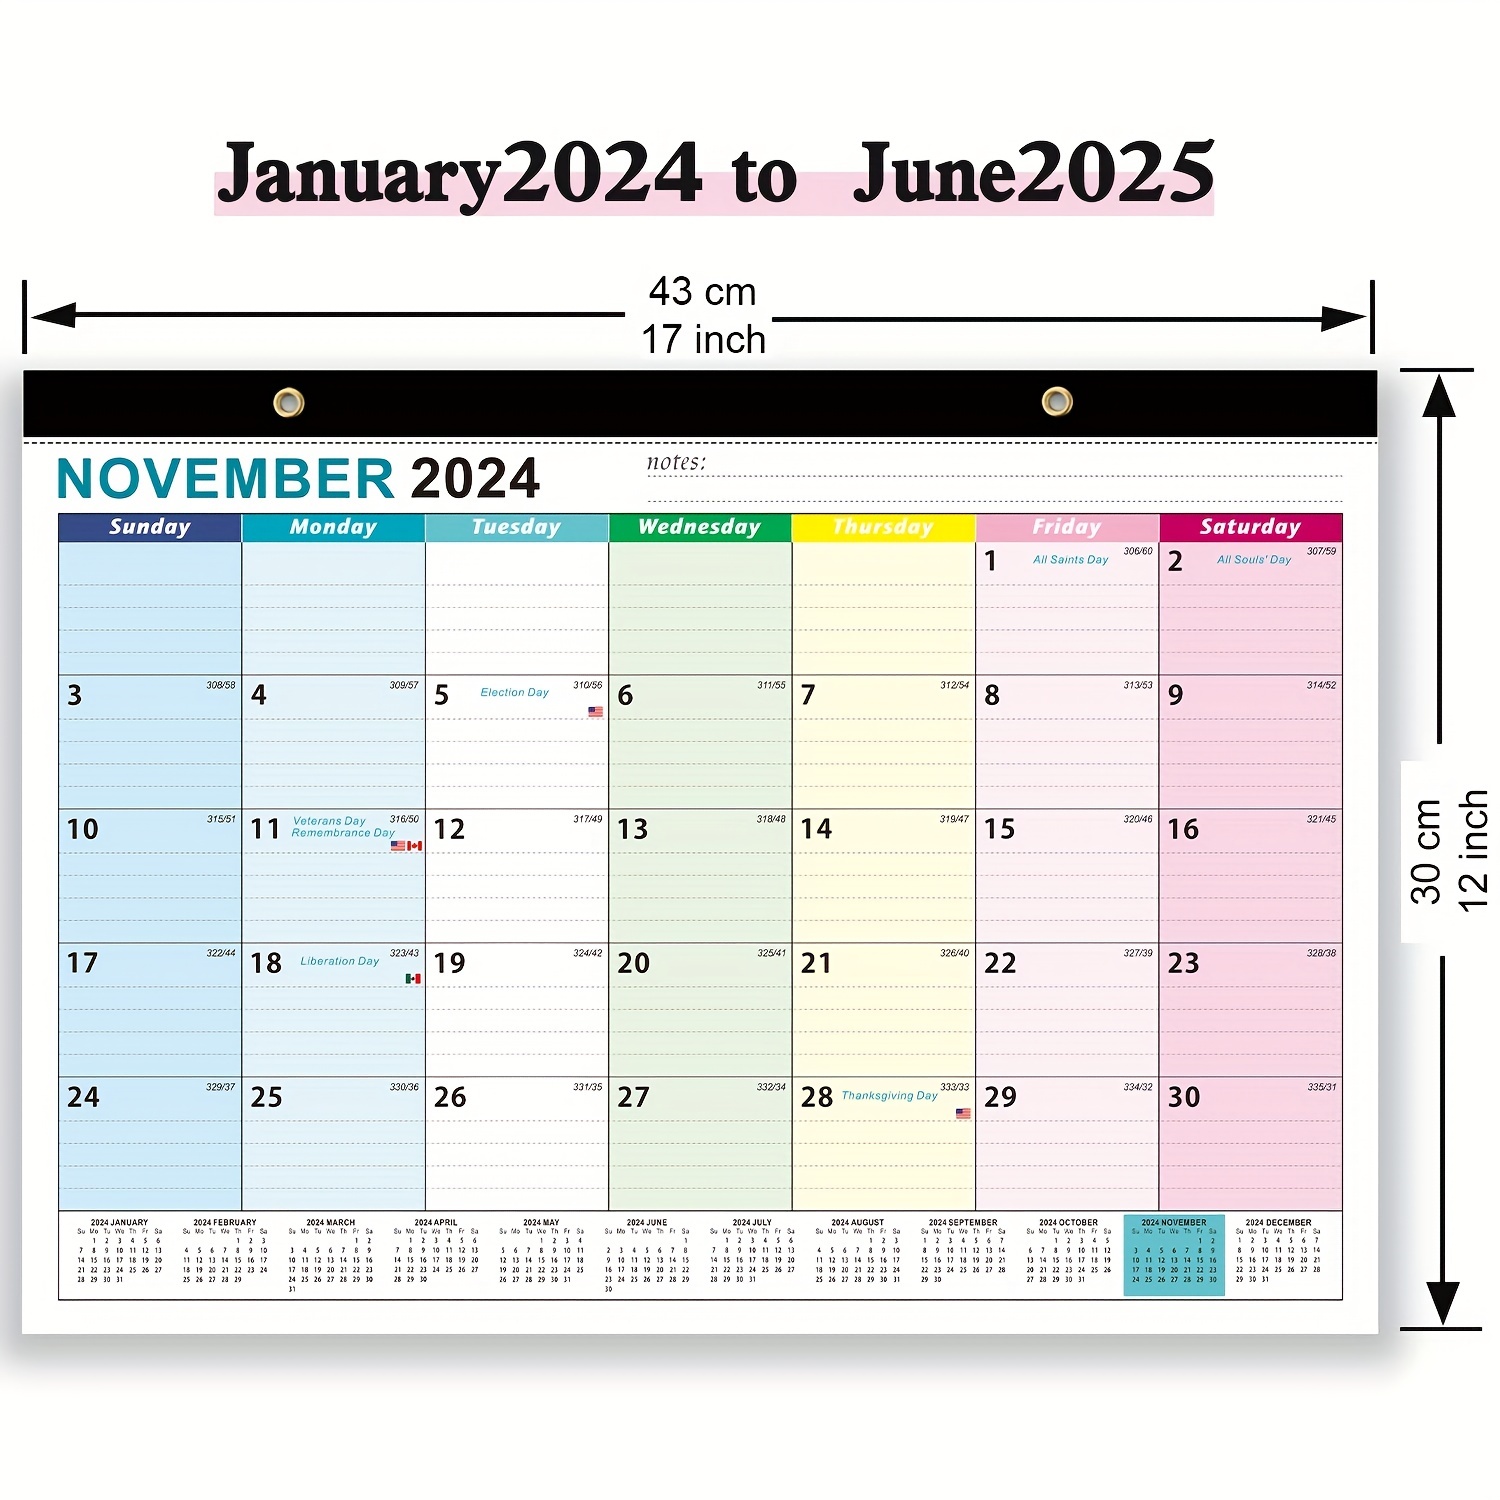 Calendrier 2024 2025 (18 Mois), Calendrier Familial Jan 2024 - Déc  2025,Calendrier mural de l'Avent Organisateur Planning Calendrier